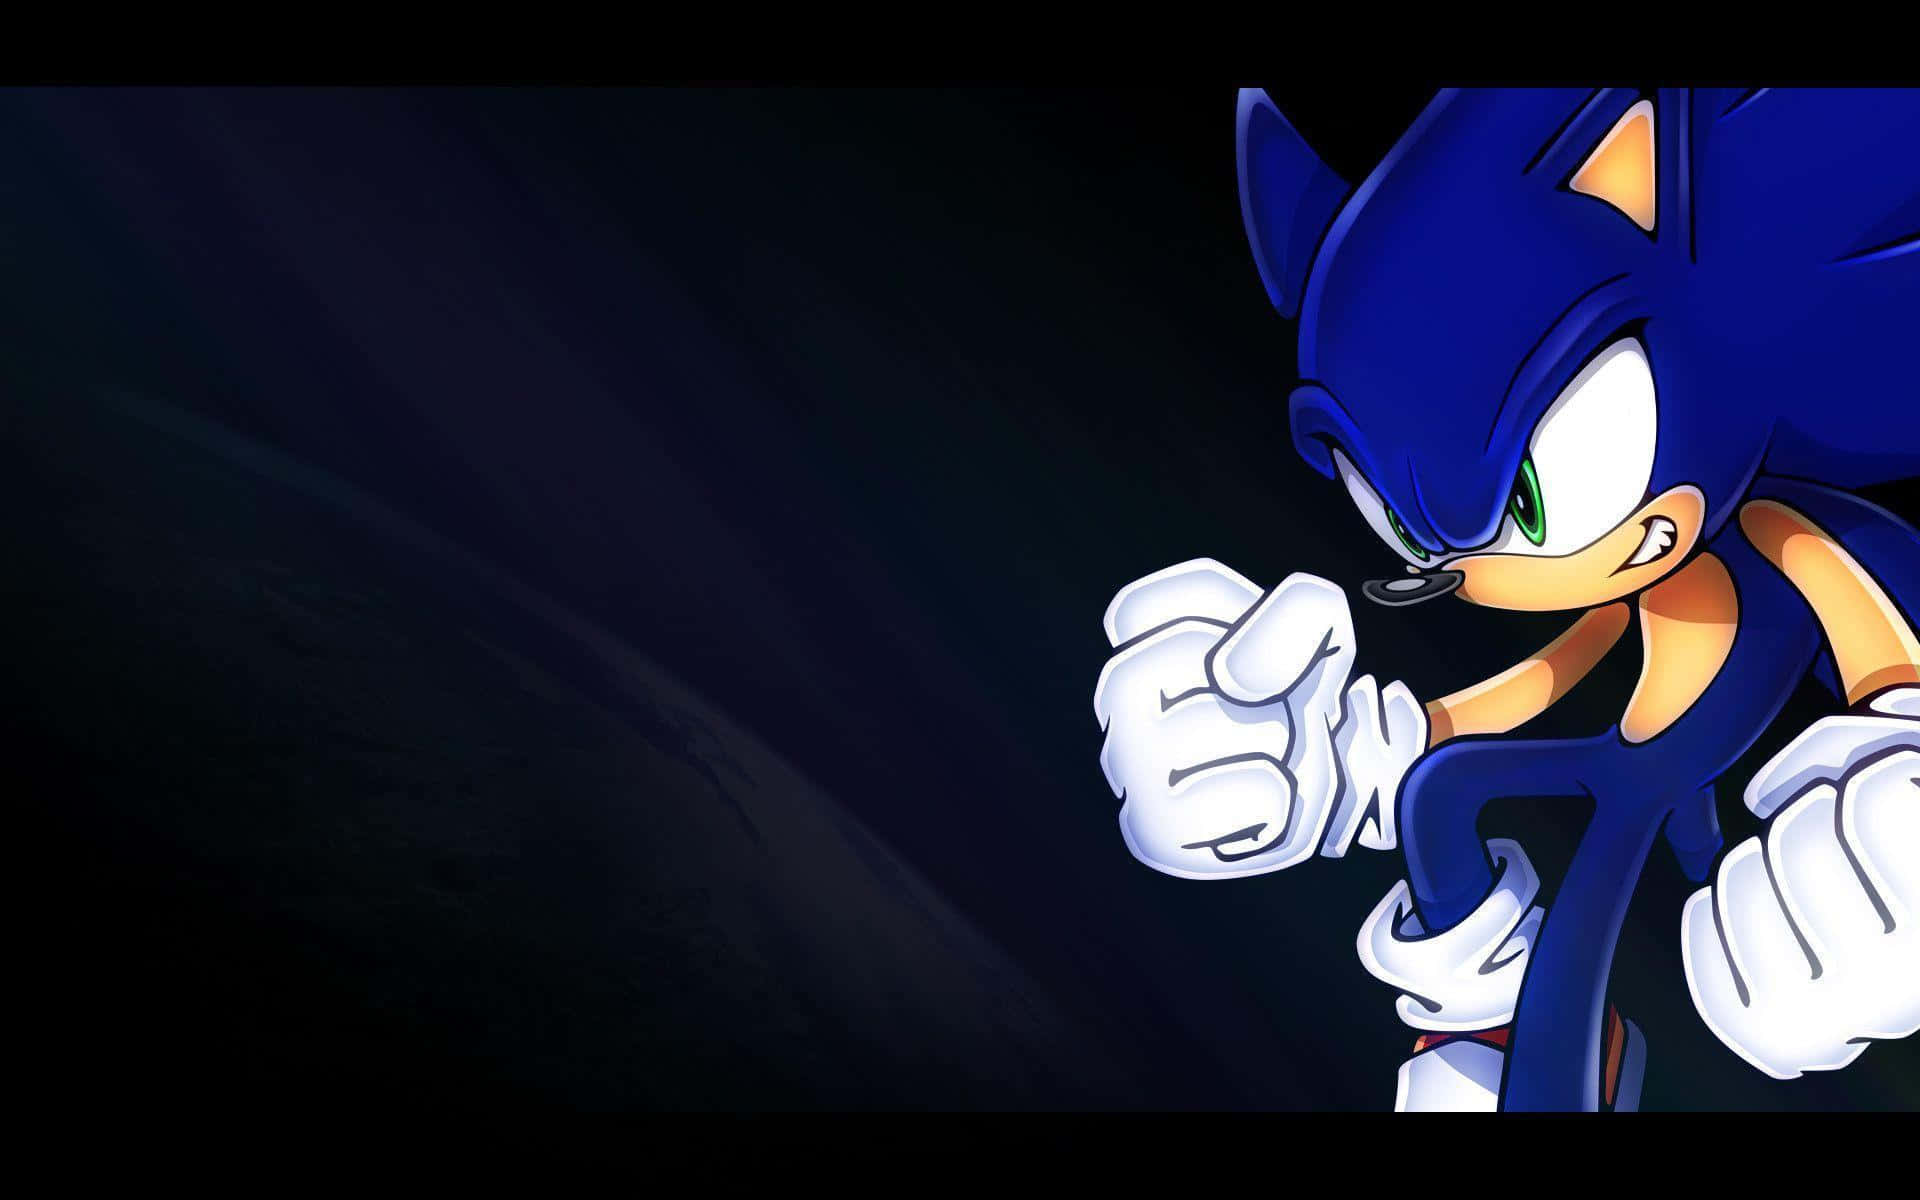 Sonicthe Hedgehog Corre A Toda Velocidad A Través De Los Vivos Colores De Un Paisaje Pixelado.